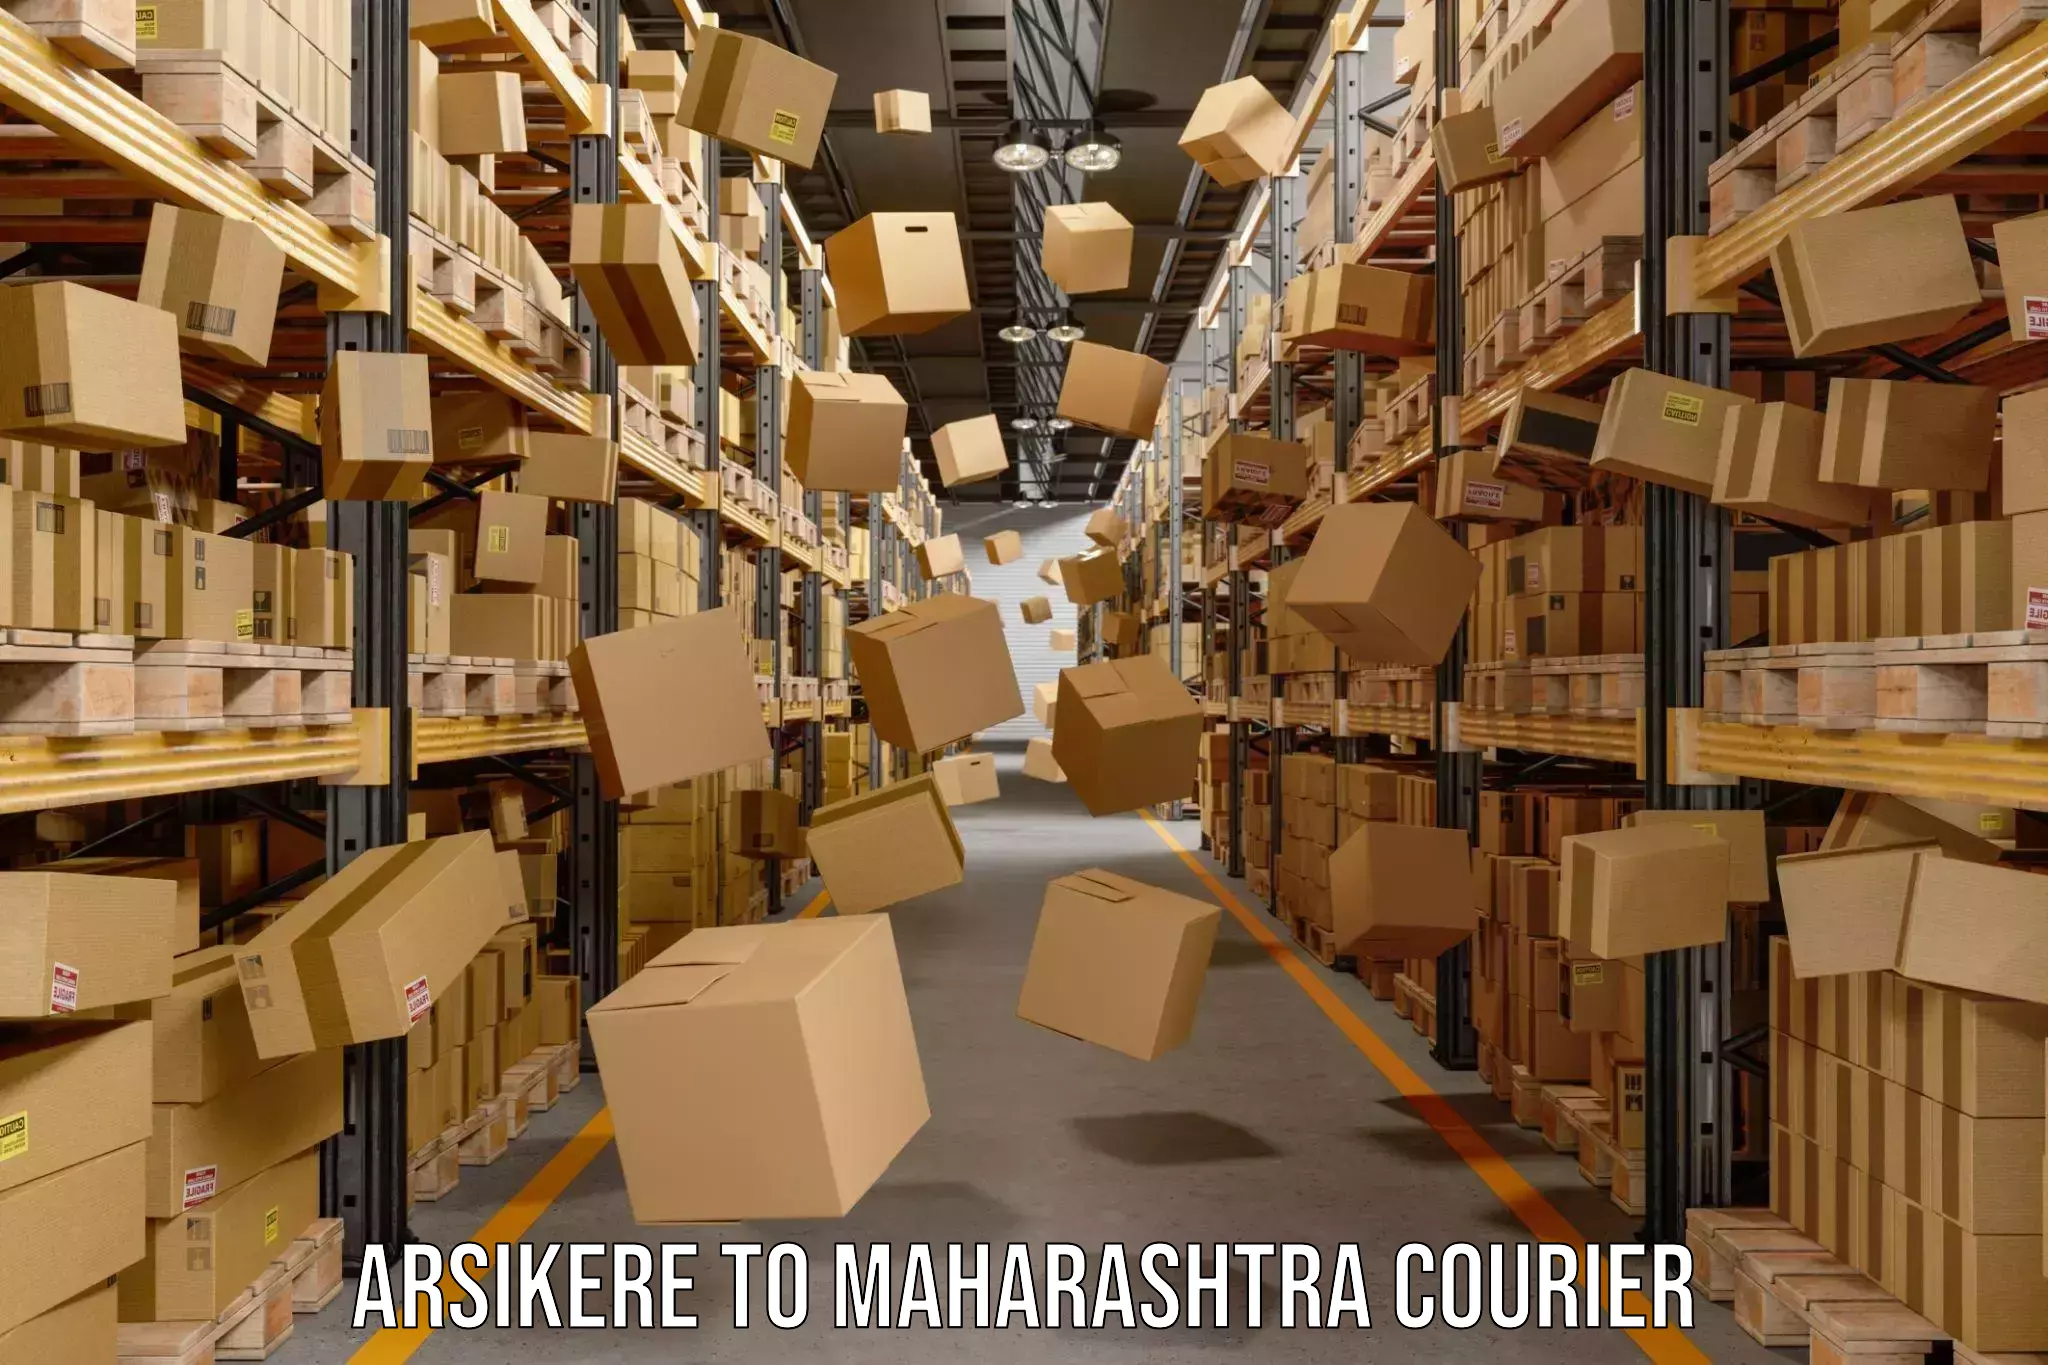 24/7 shipping services Arsikere to Maharashtra